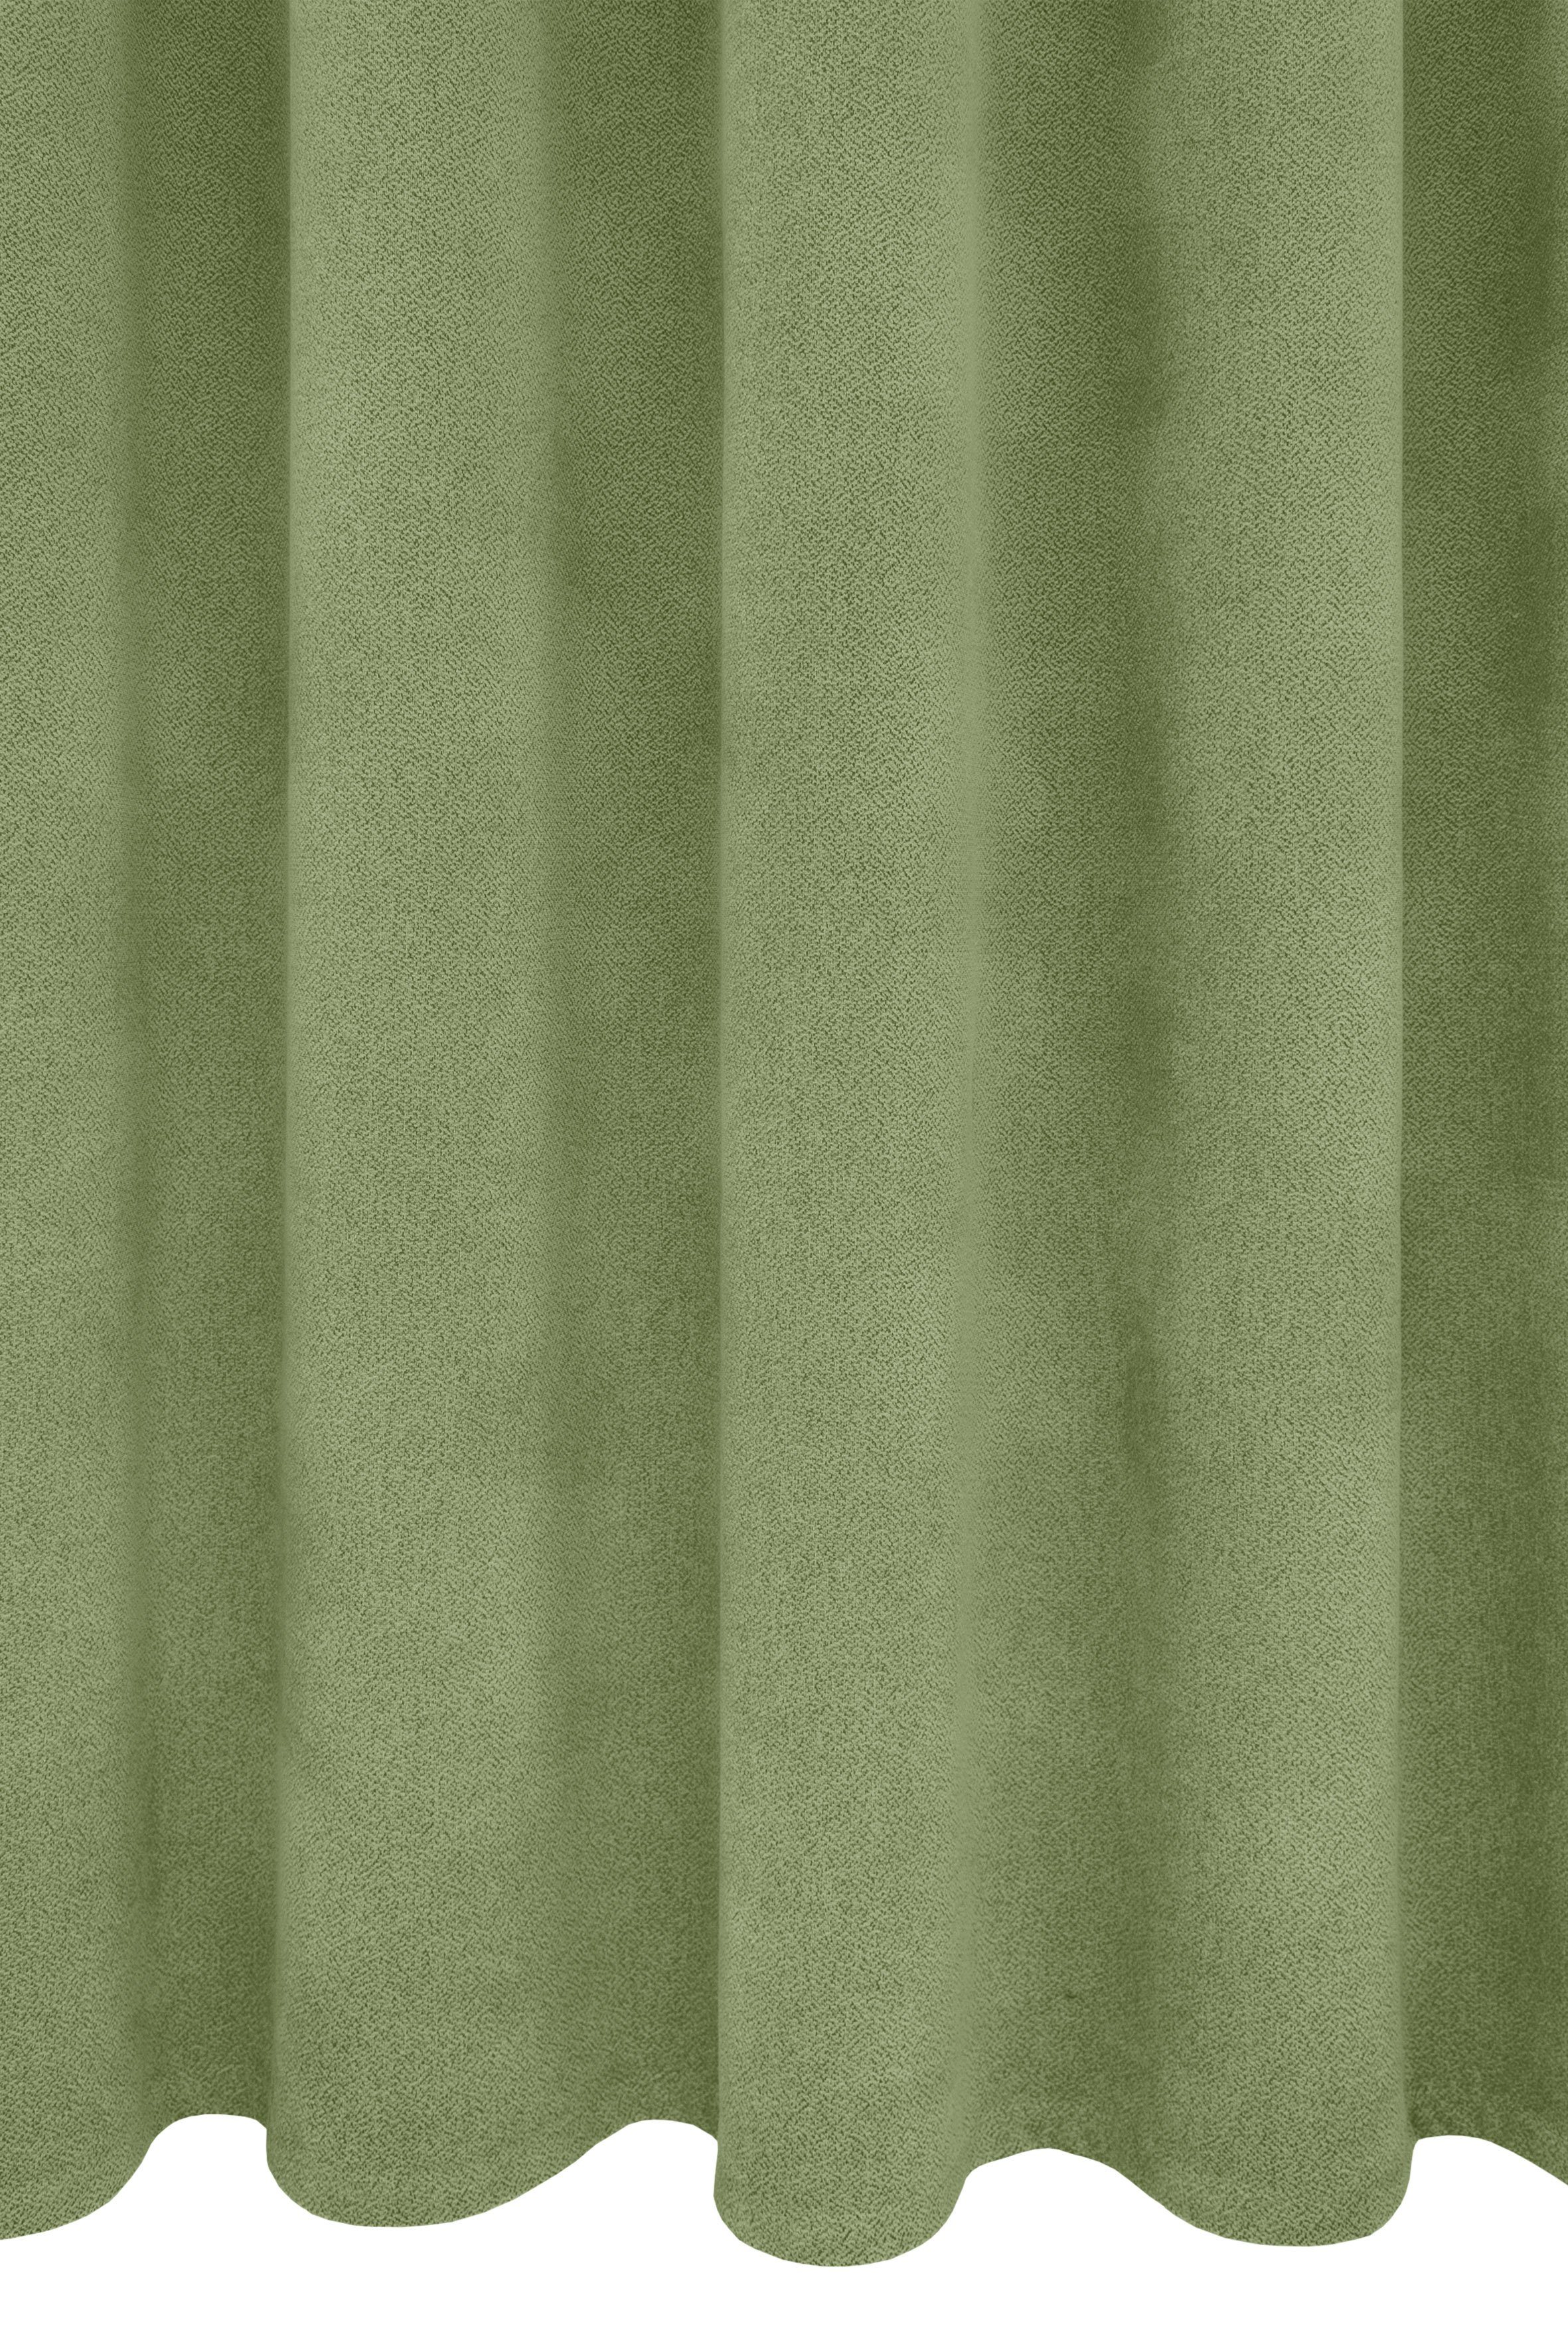 Breite Polyester, 415 (1 Wärmeschutz, verdunkelnd, Alea, Kälteschutz, 145cm, Energie sparend, Vorhang Ösen St), VHG, grün einfarbig, g/²m